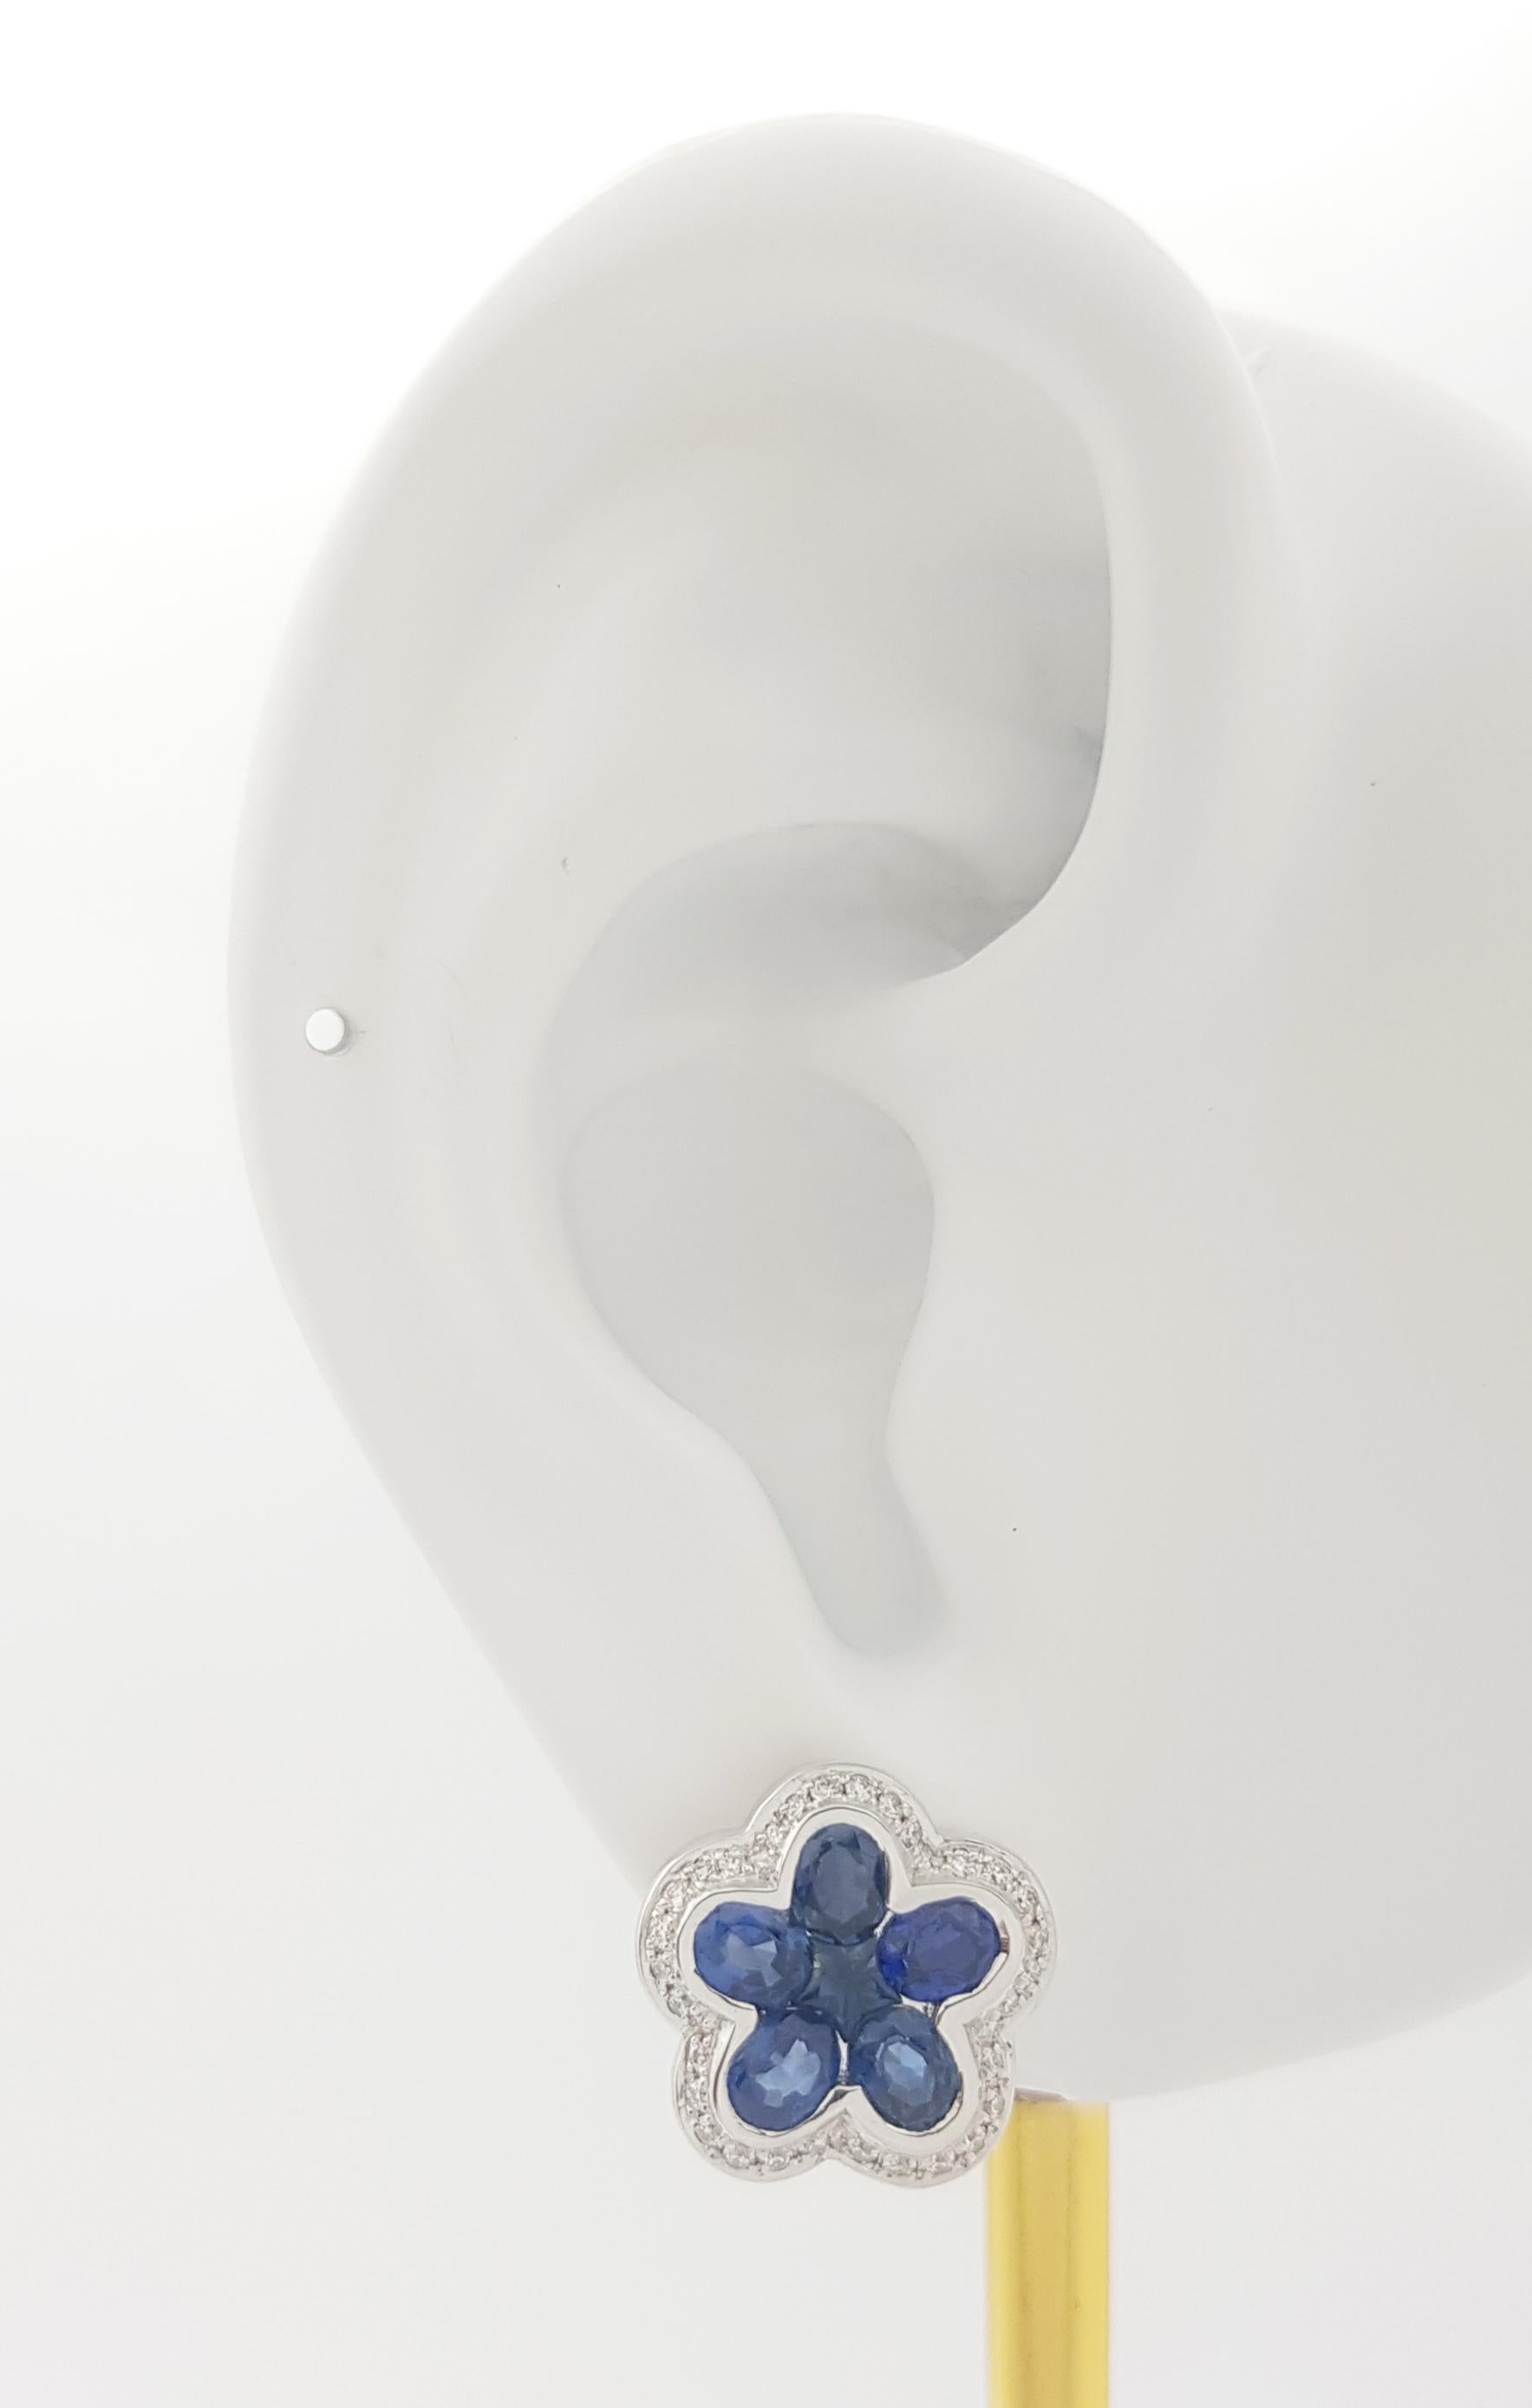 Blauer Saphir 2,90 Karat mit Diamant 0,25 Karat Ohrringe in 18K Weißgoldfassung

Breite: 1.3 cm 
Länge: 1.3 cm
Gesamtgewicht: 8,99 Gramm

